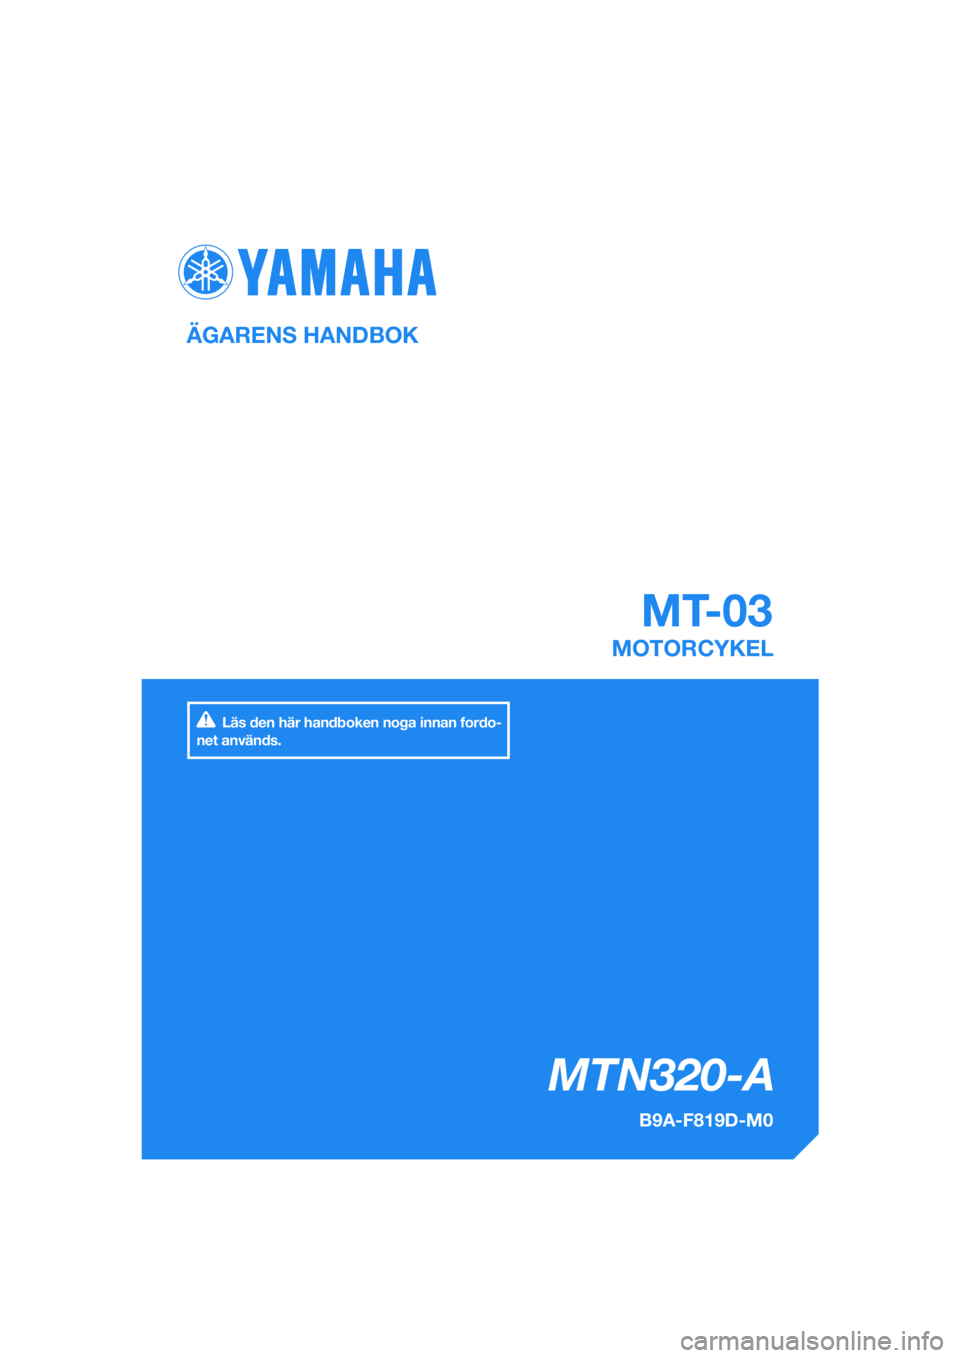 YAMAHA MT-03 2018  Bruksanvisningar (in Swedish) DIC183
MTN320-A
MT-03
ÄGARENS HANDBOK
B9A-F819D-M0
MOTORCYKEL
[Swedish  (M)]
Läs den här handboken noga innan fordo-
net används. 